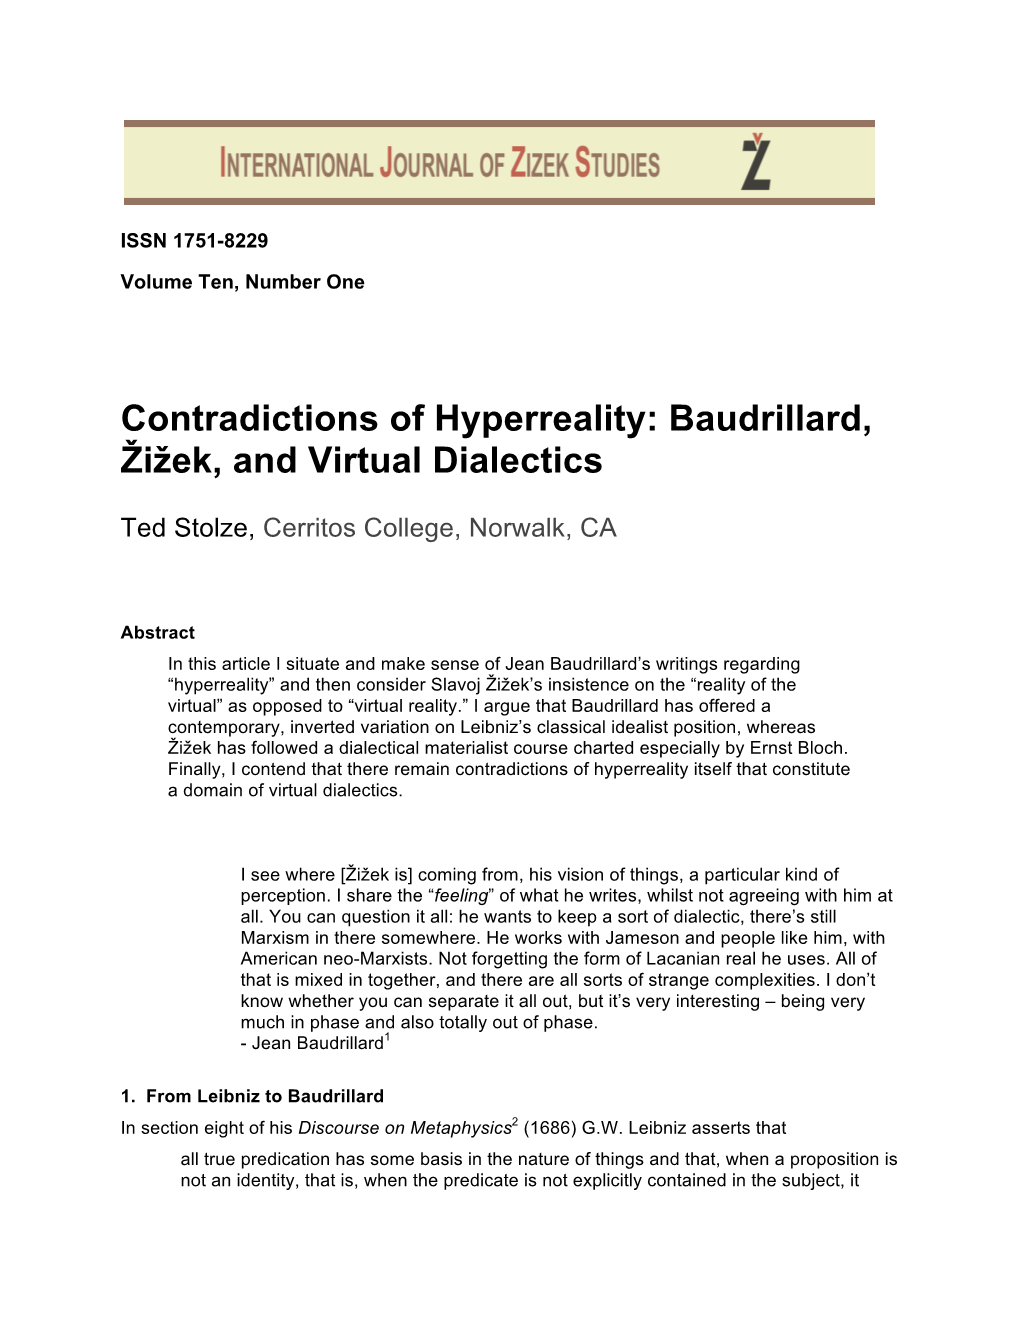 Baudrillard, Žižek, and Virtual Dialectics